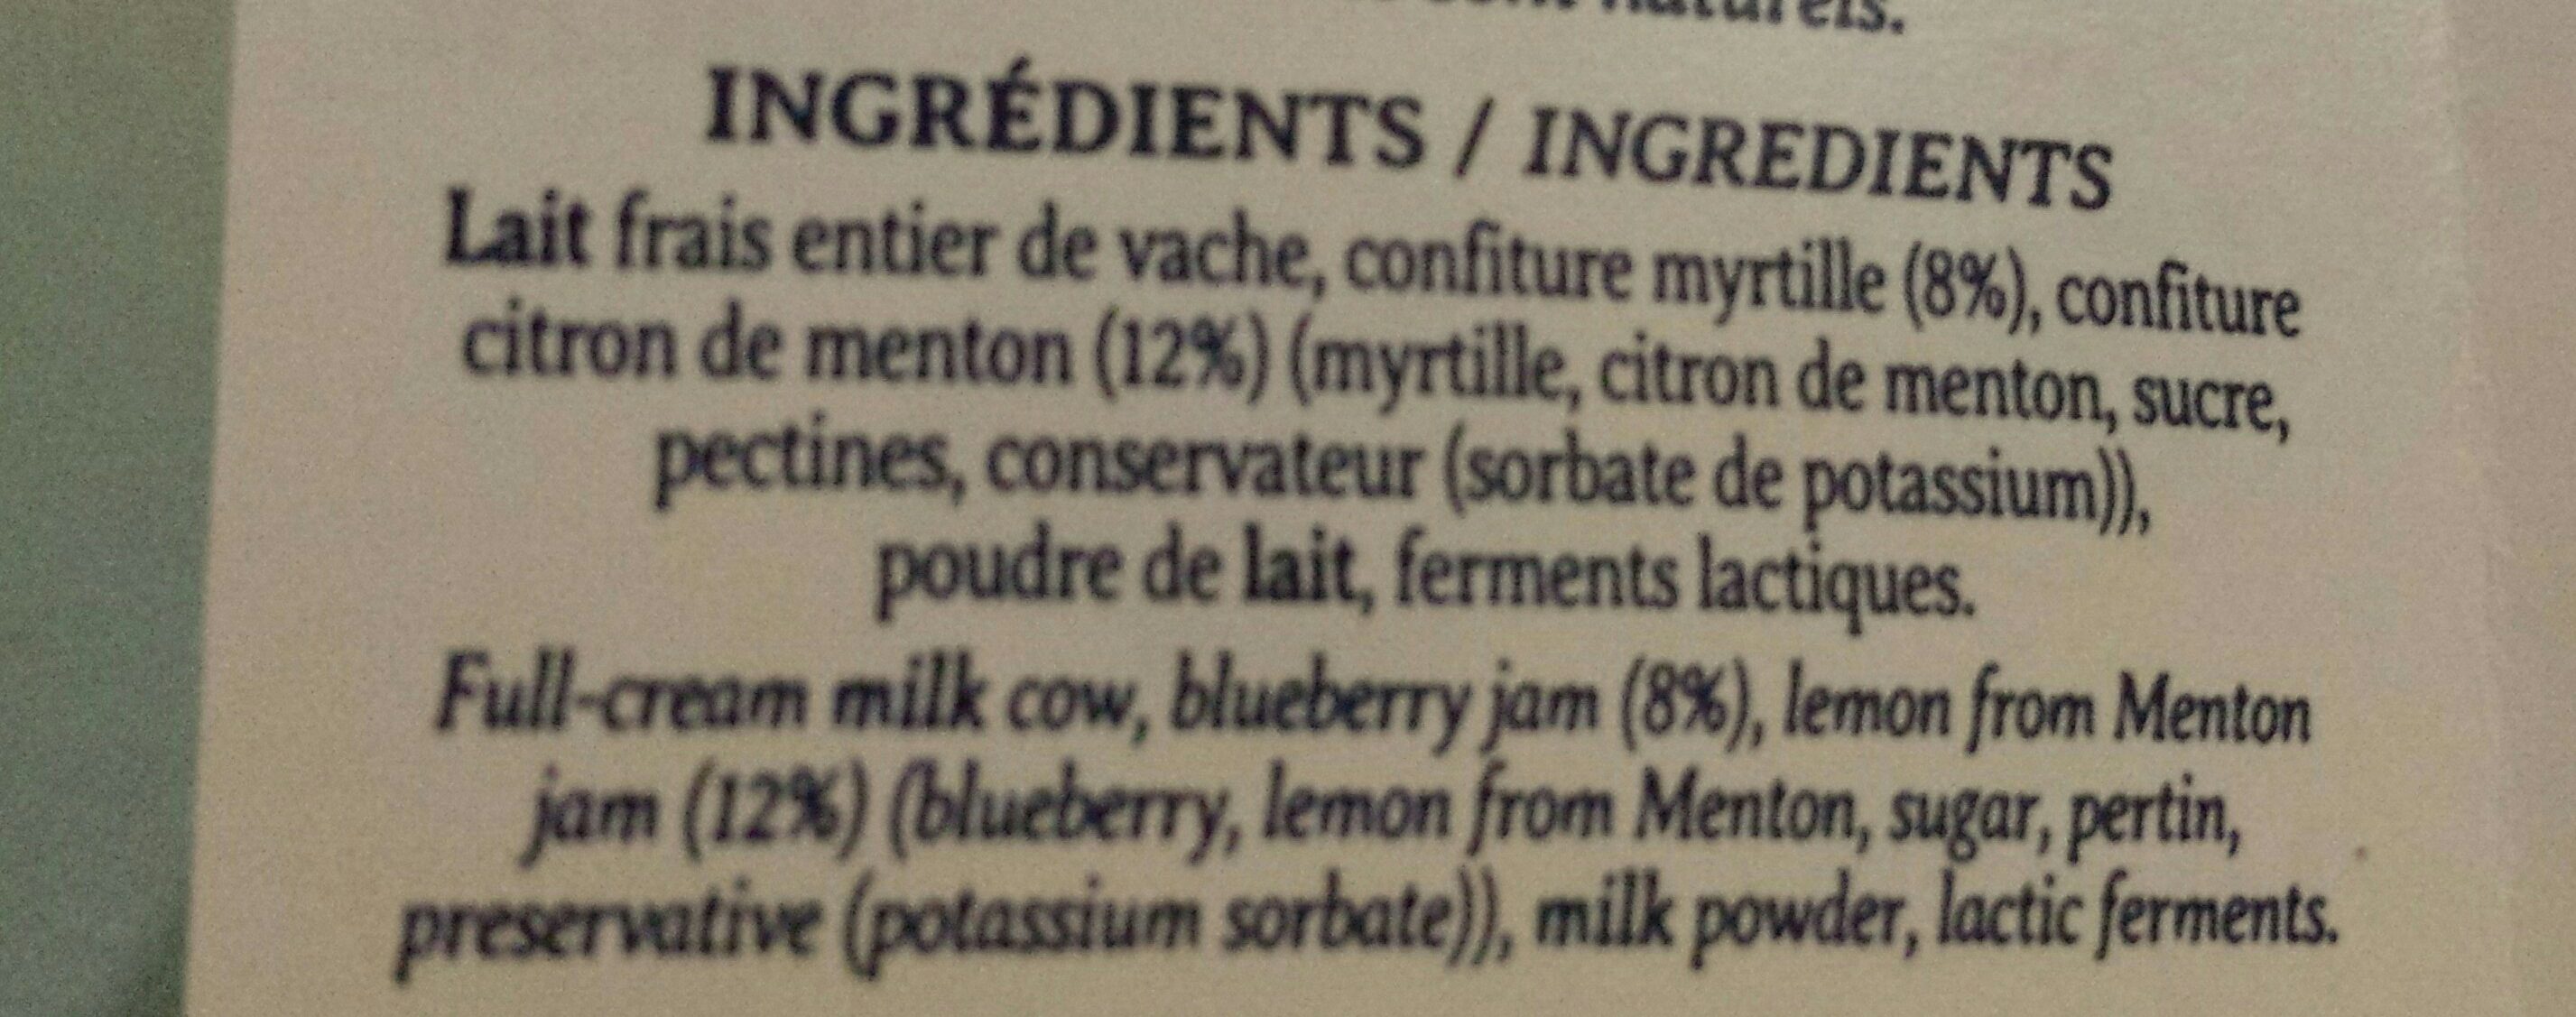 Ekia myrtille citron de menton - Ingredients - fr